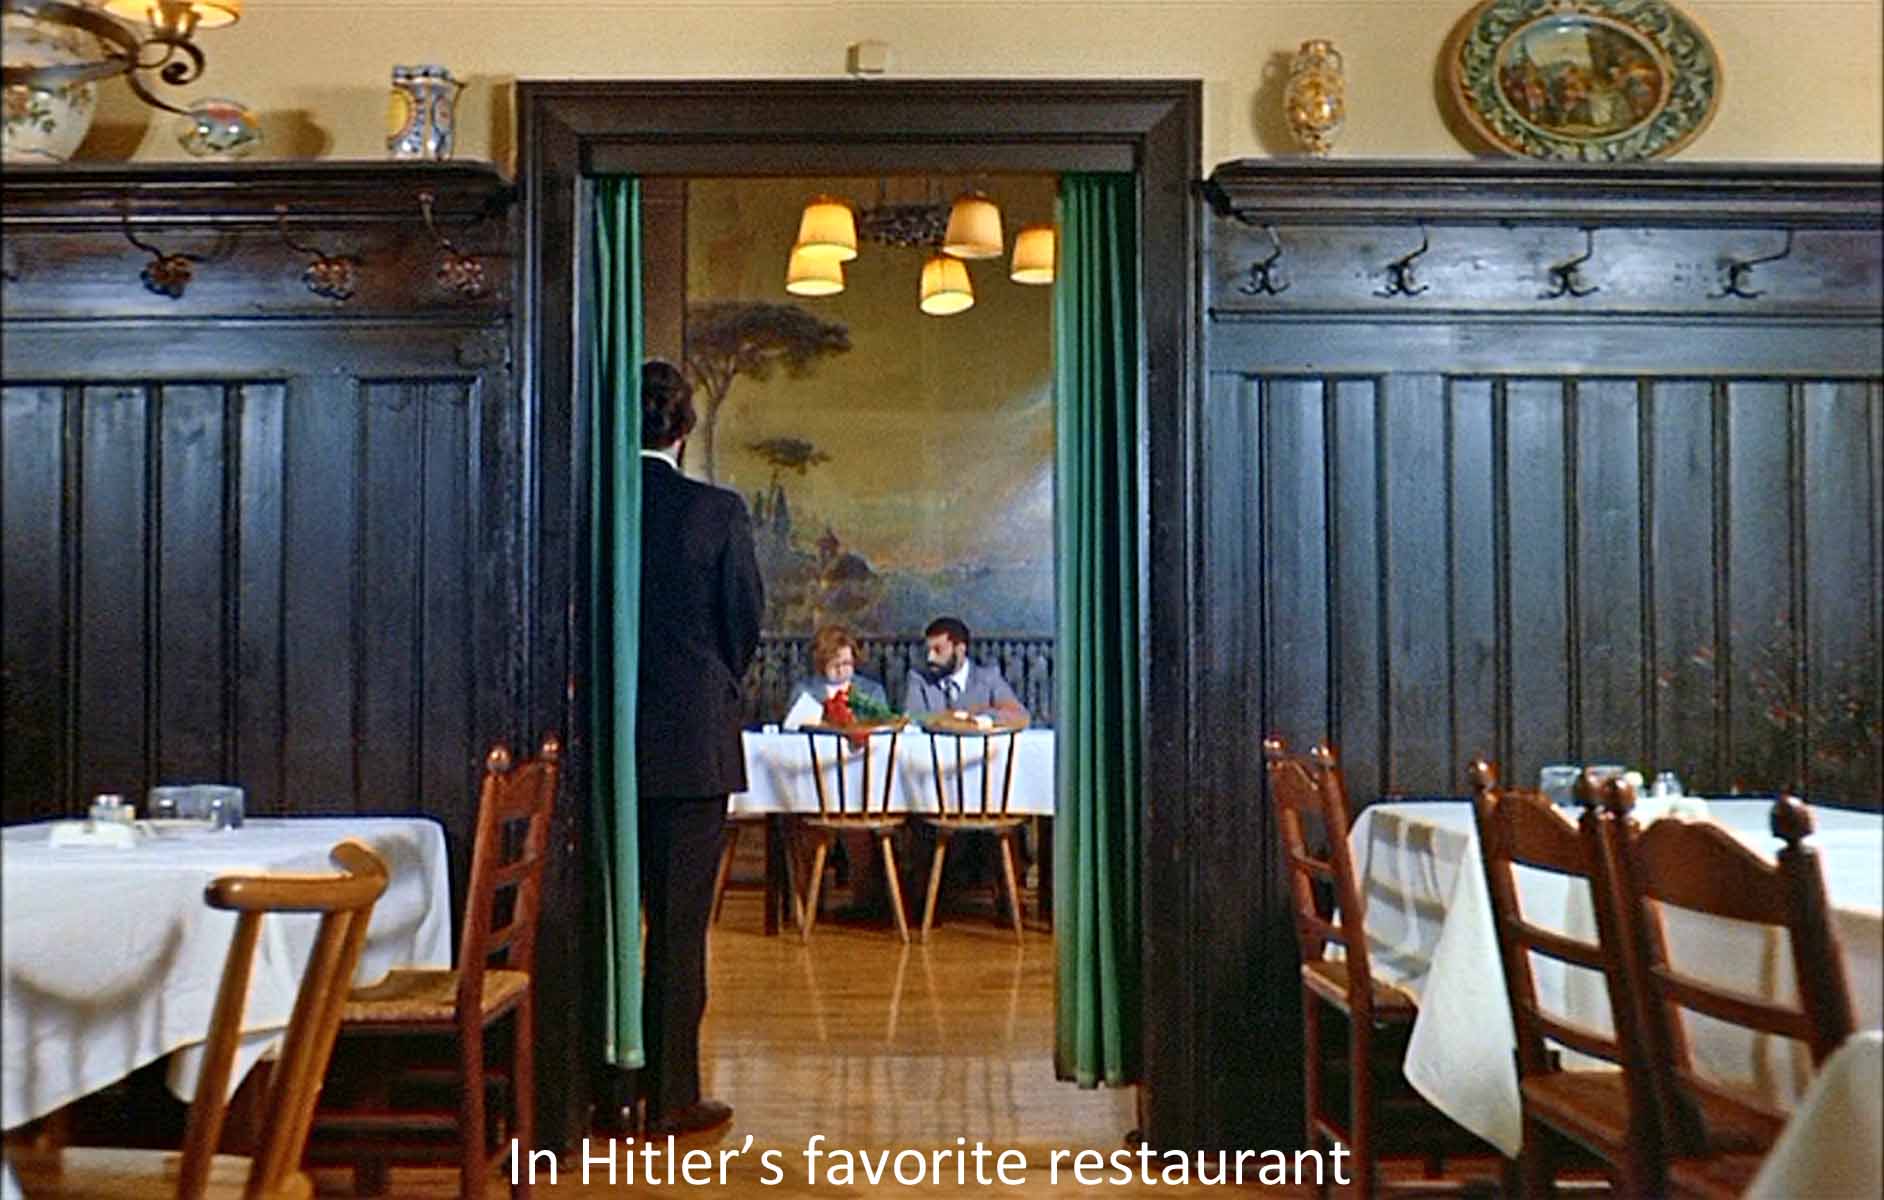 In Hitler's favorite restaurant